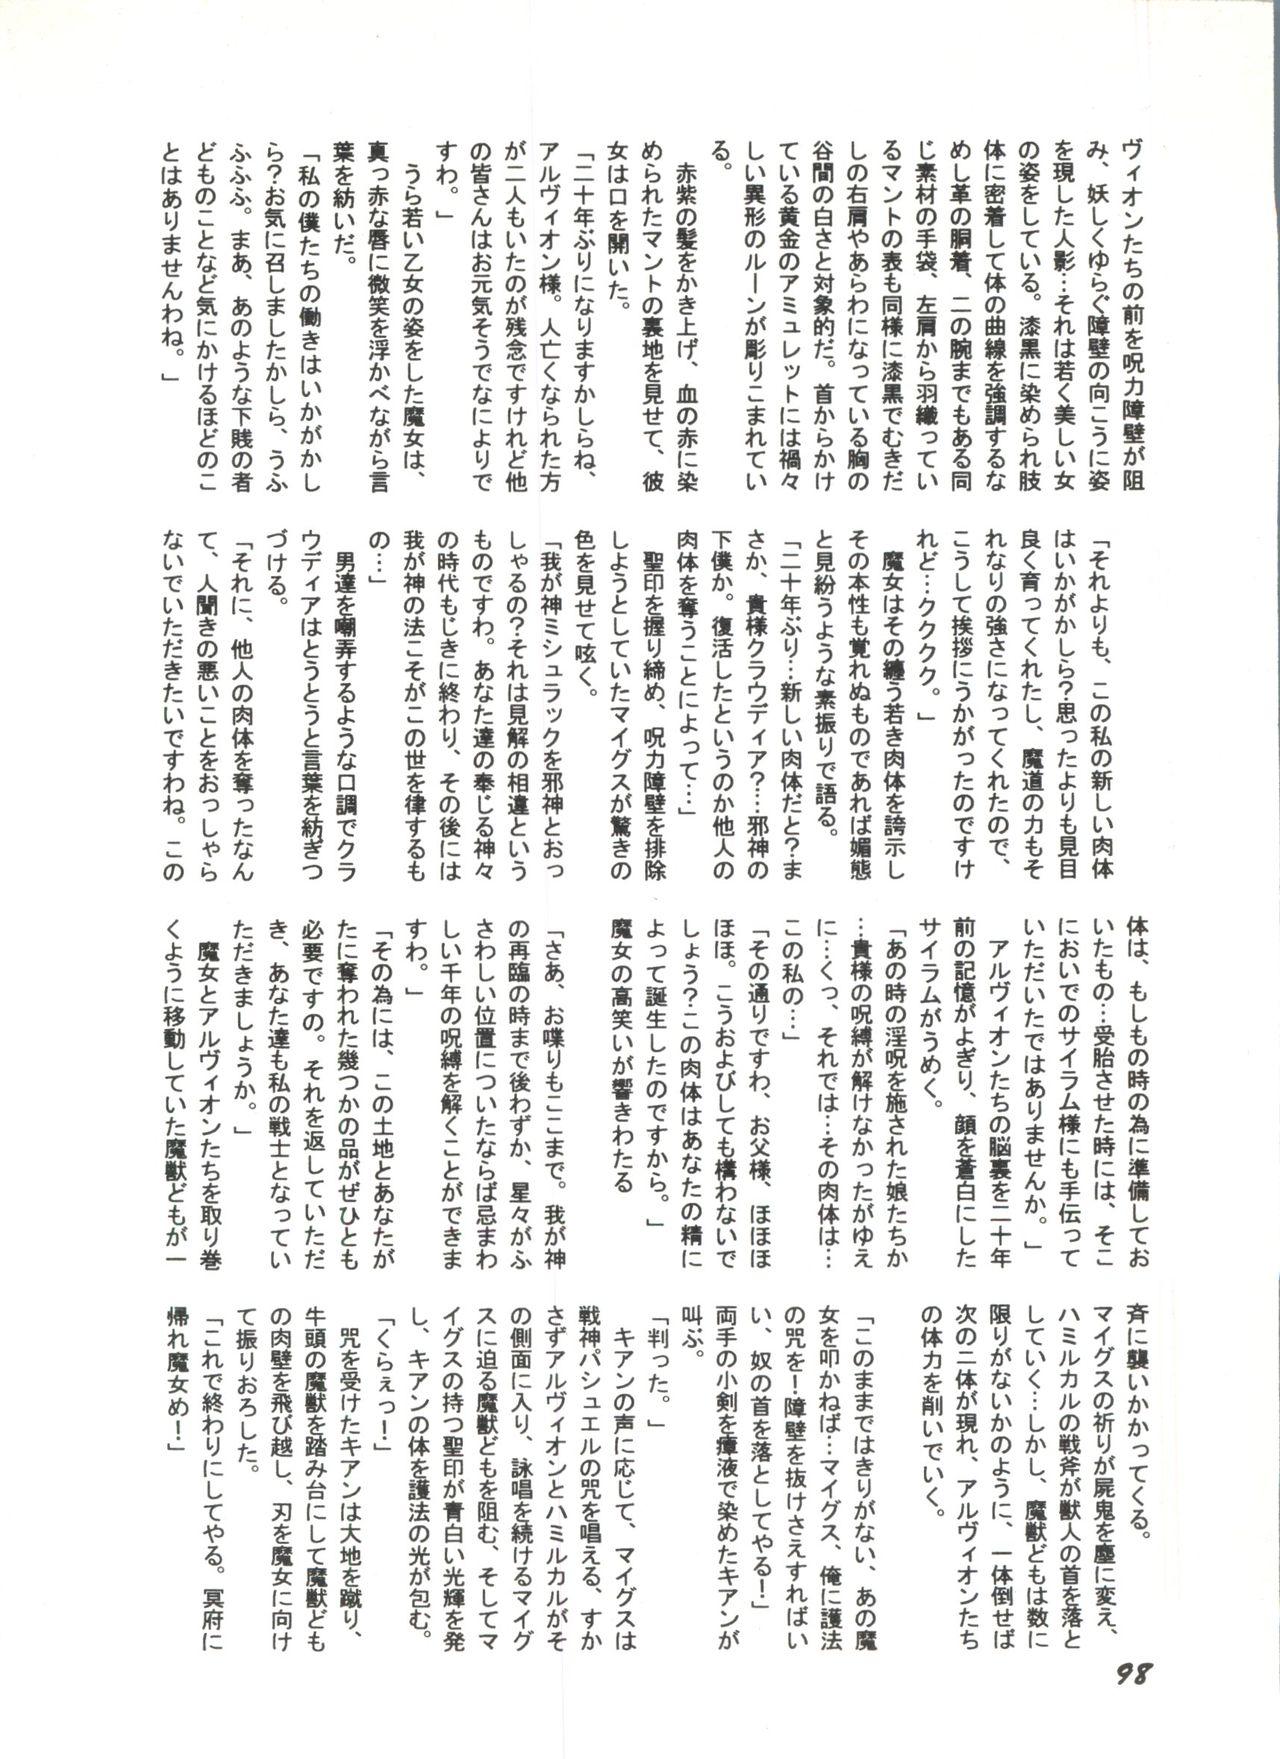 Bishoujo Doujinshi Anthology 1 99